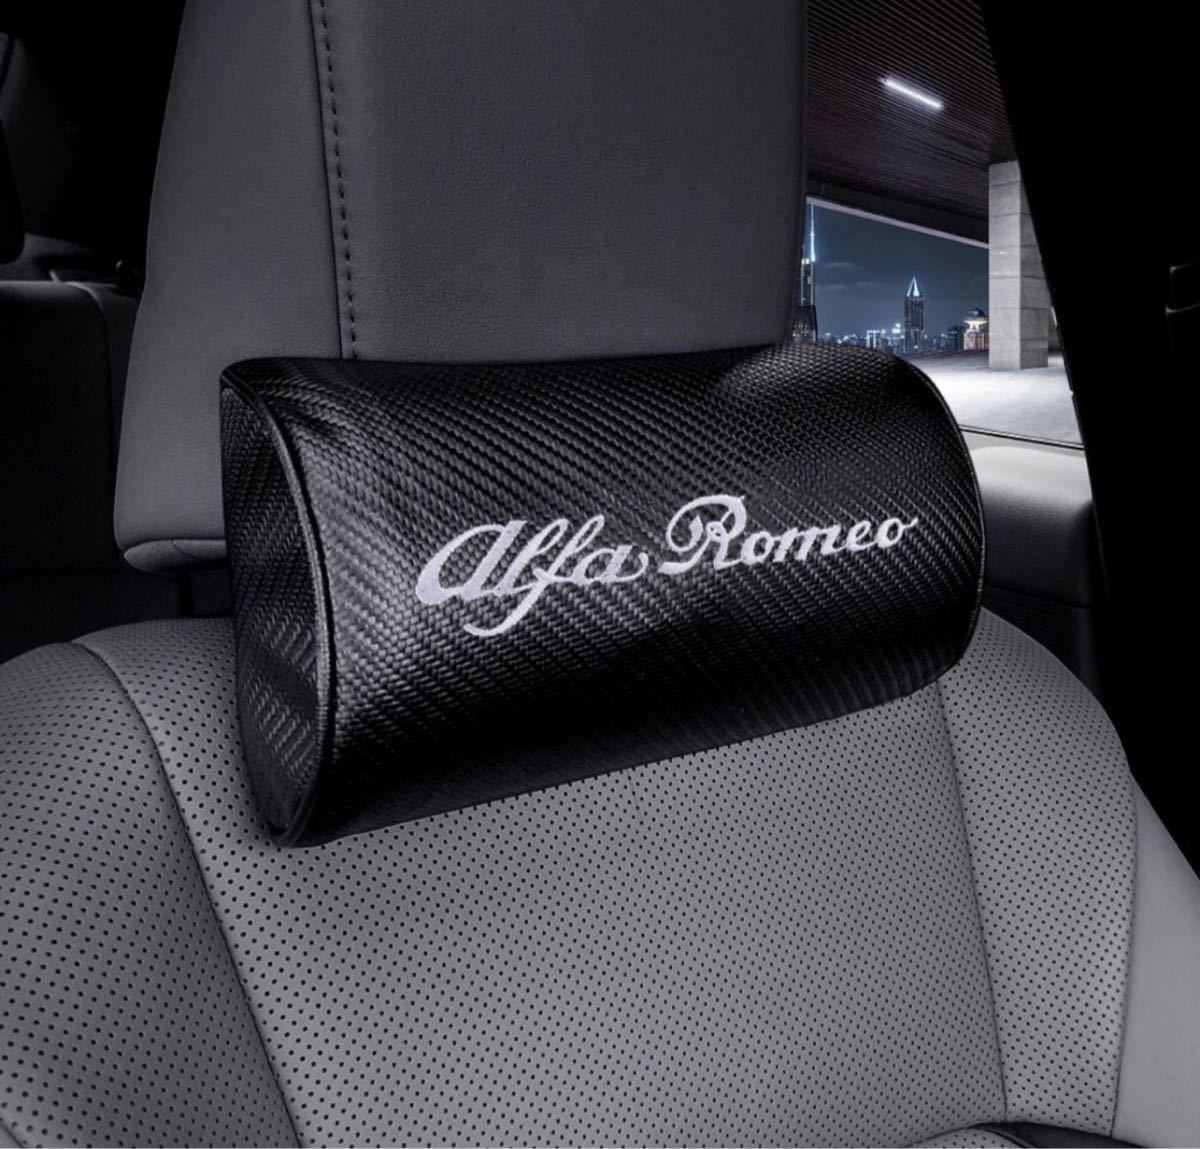 ★ Alfa Romeo アルファロメオ ヘッドレストネックパッド カーボン調 刺繍テキストロゴ入り2個セット★_画像1